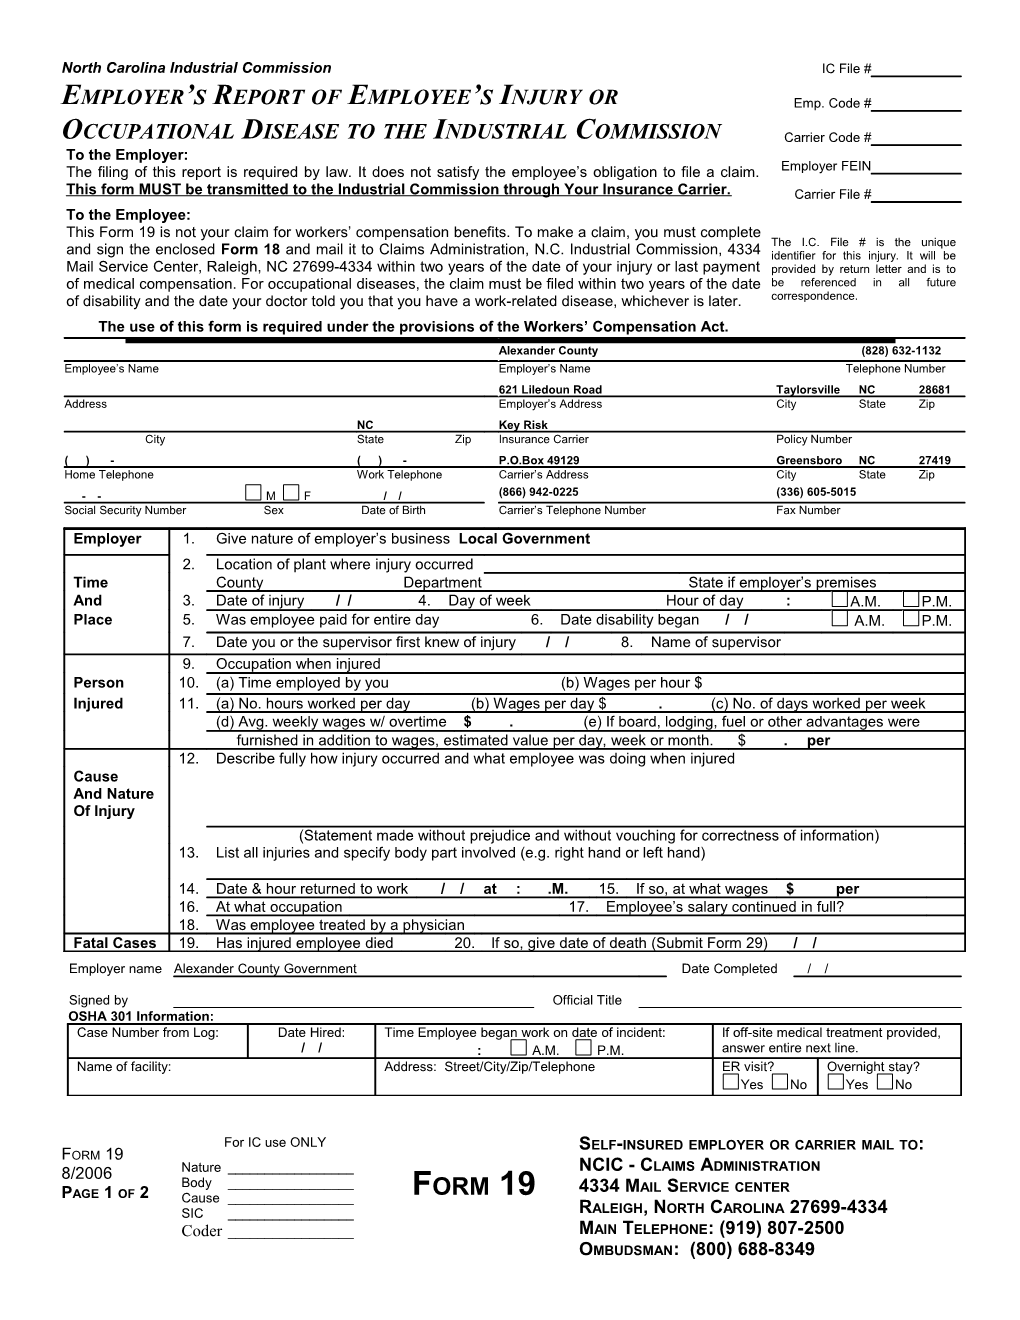 Form 19 2002 with OSHA 301 Info